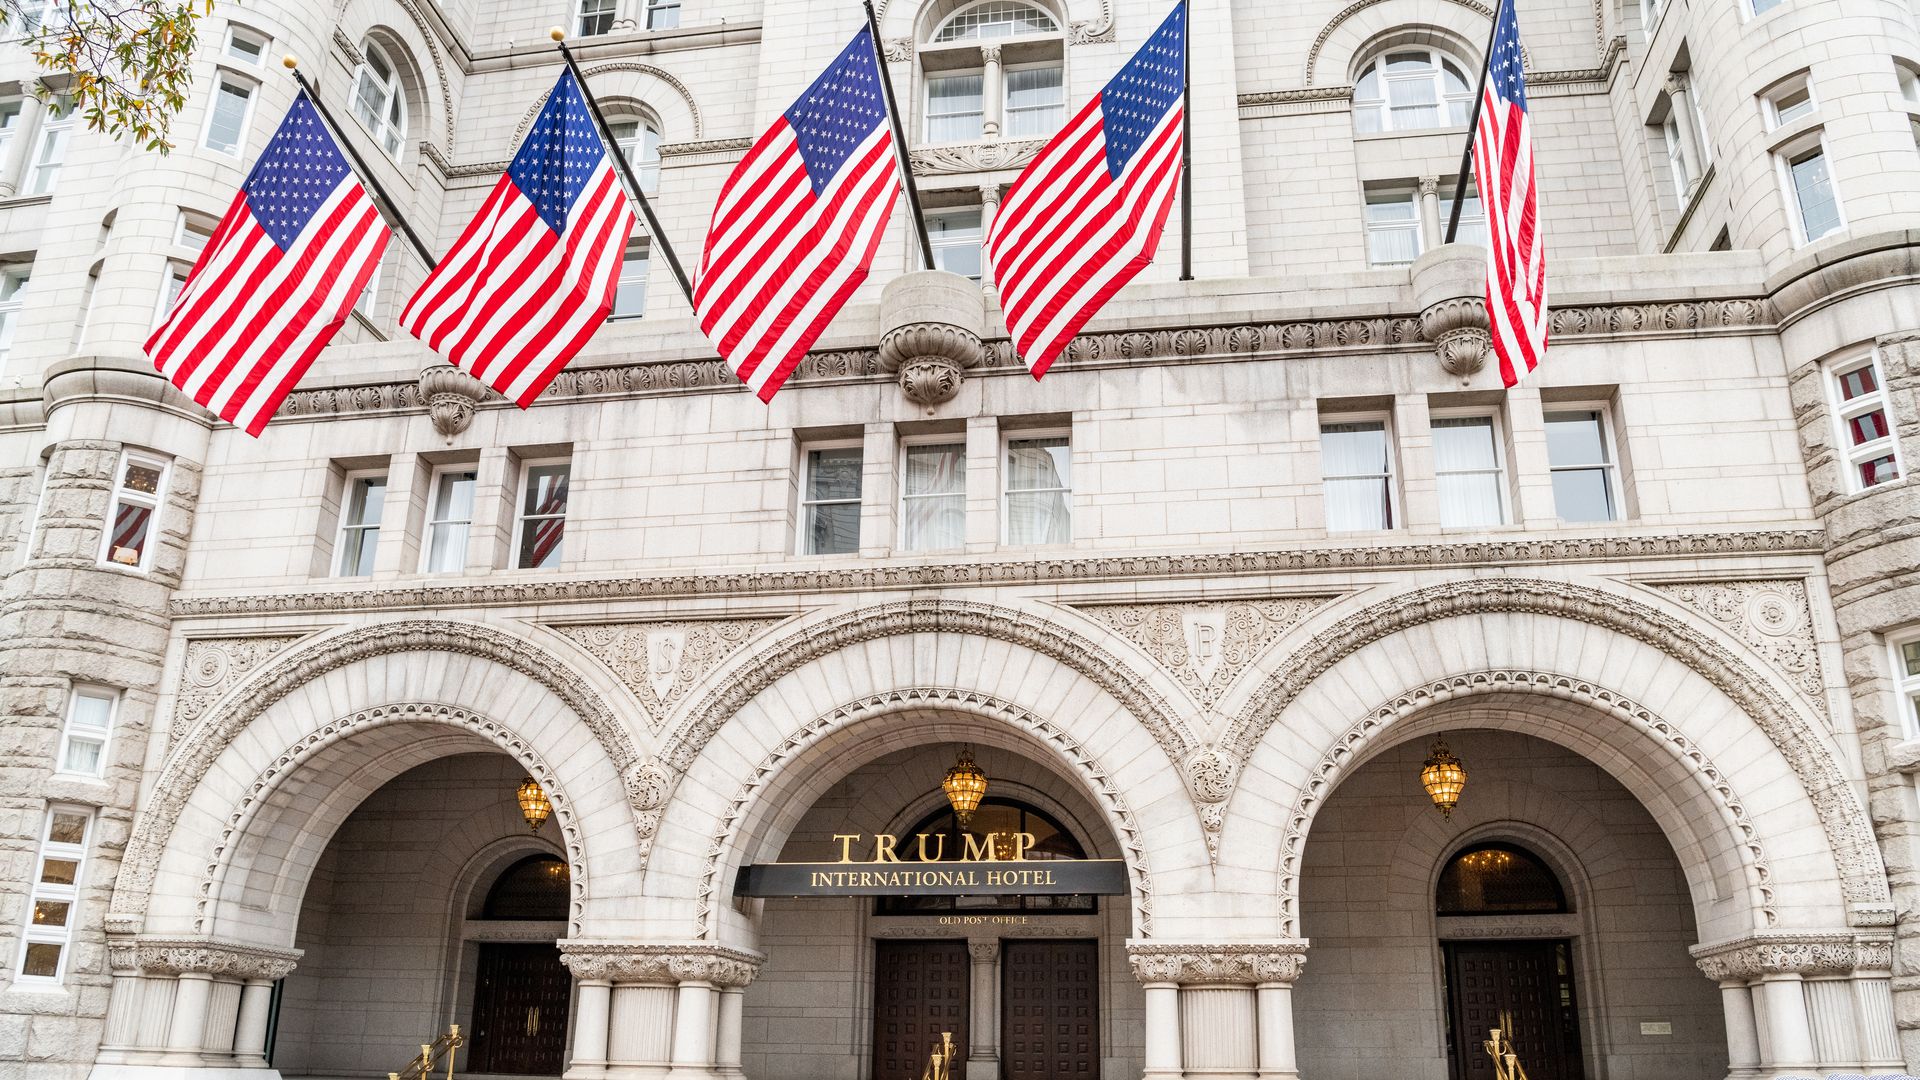 Trump's hotel in DC